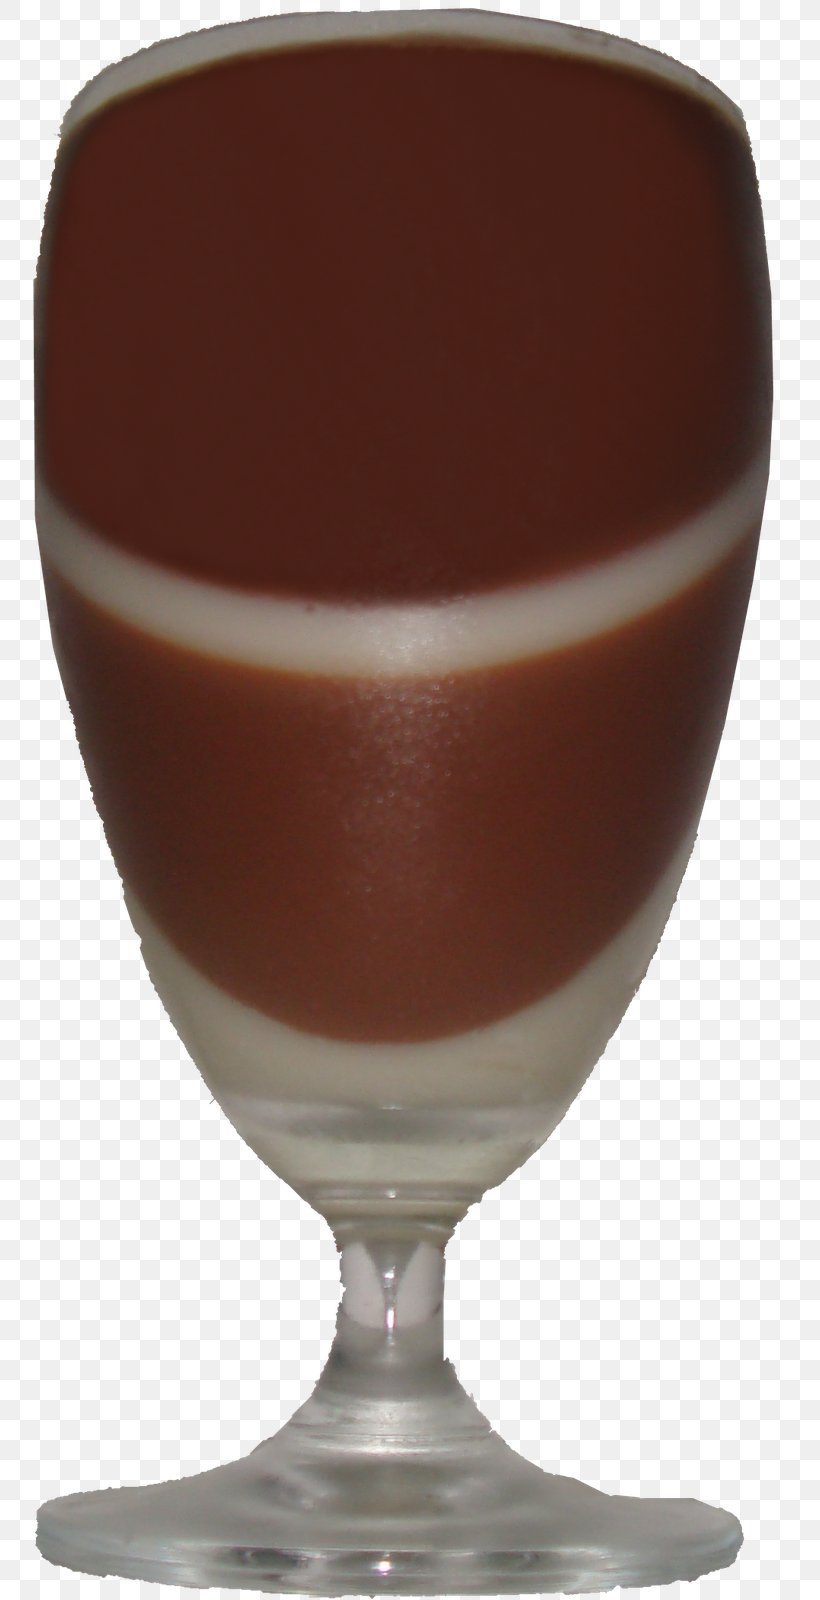 Wine Glass Irish Cuisine Irish Cream Caramel Color Brown, PNG, 754x1600px, Wine Glass, Brown, Caramel Color, Chocolate, Cup Download Free